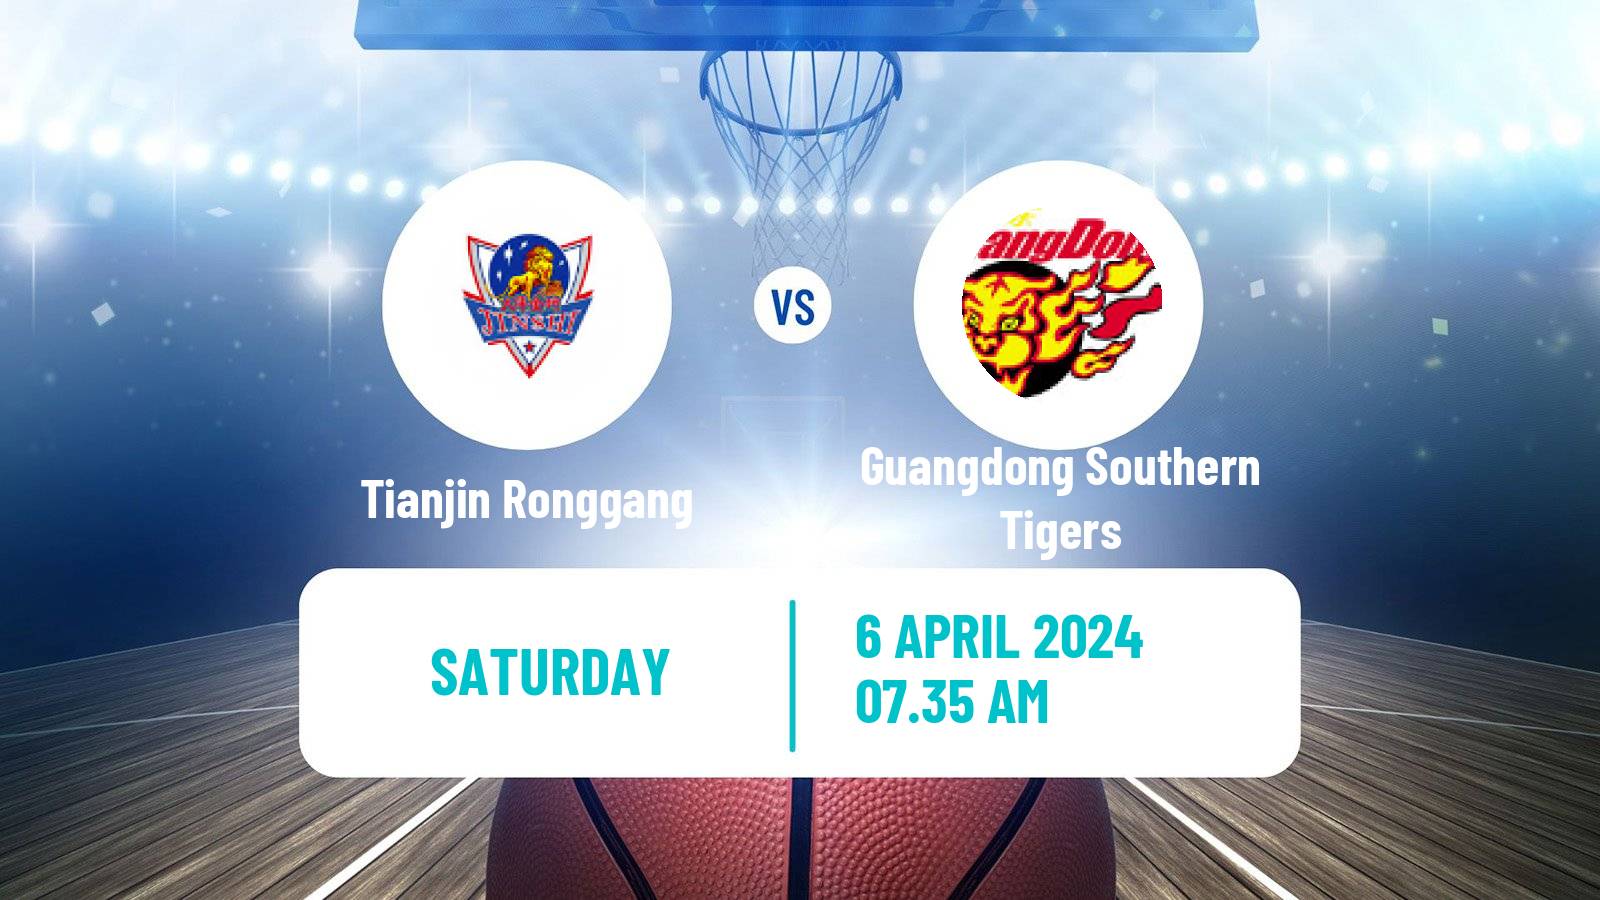 Basketball CBA Tianjin Ronggang - Guangdong Southern Tigers